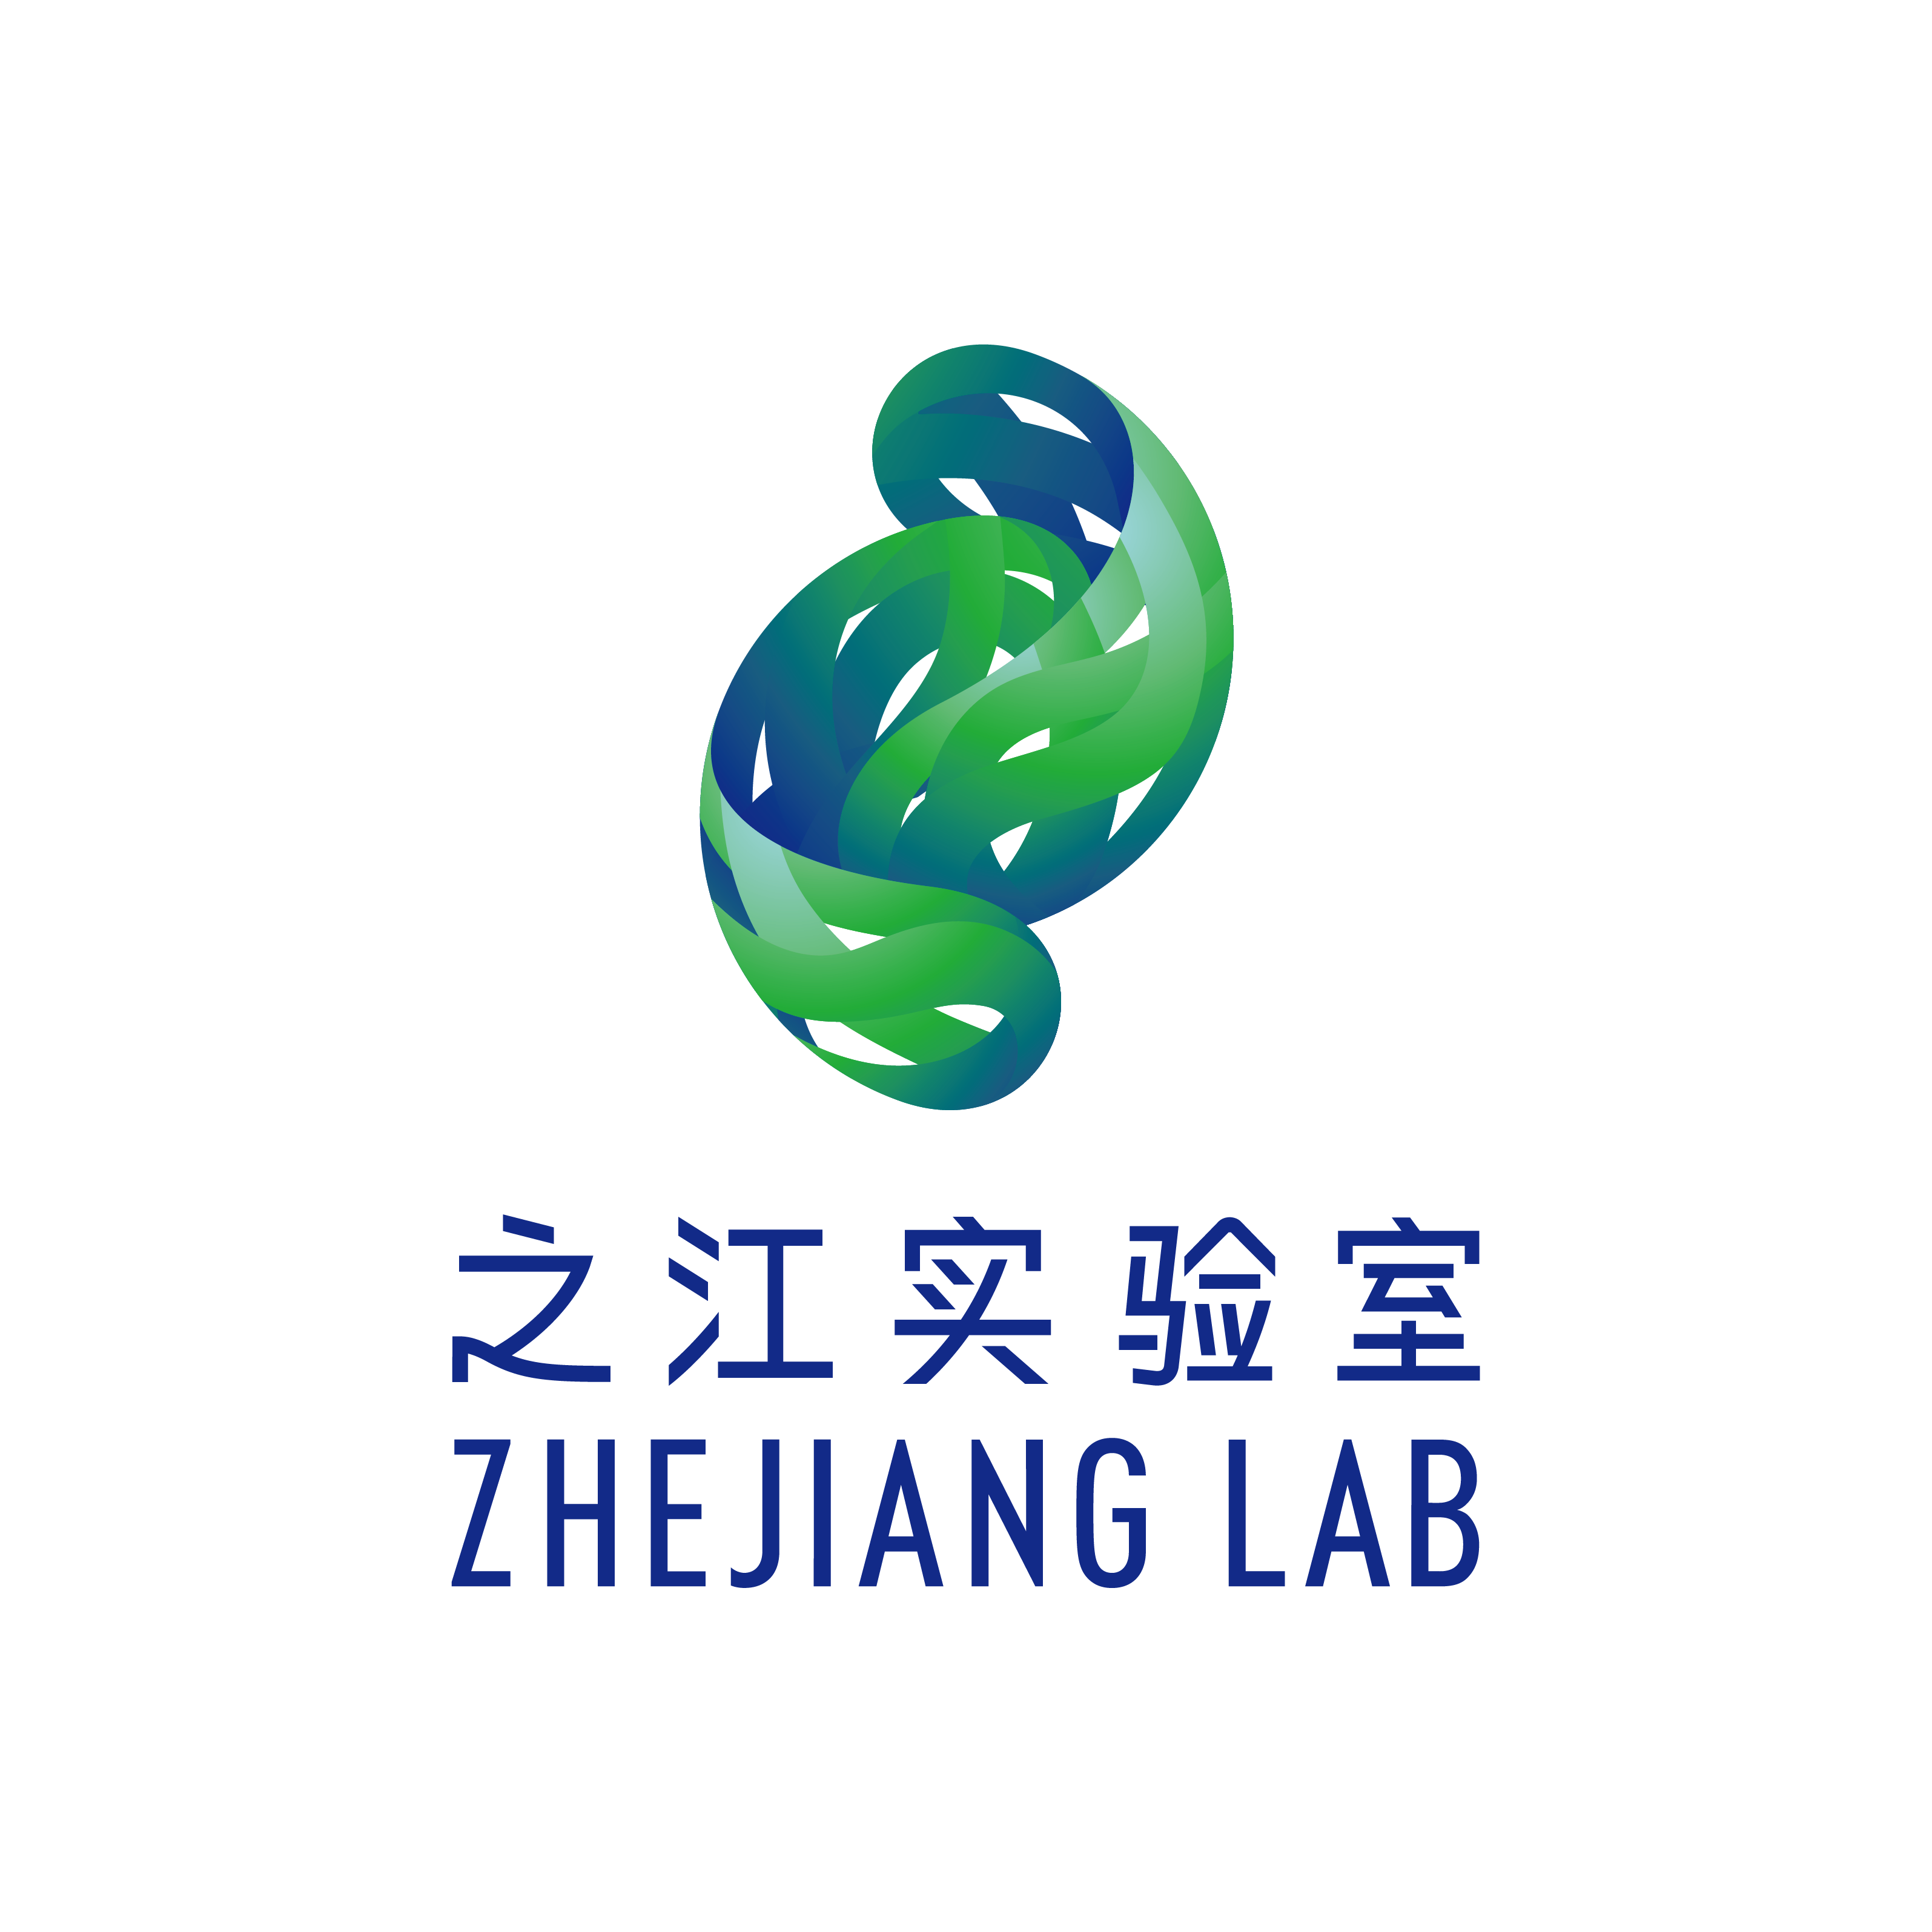 zhejianglab